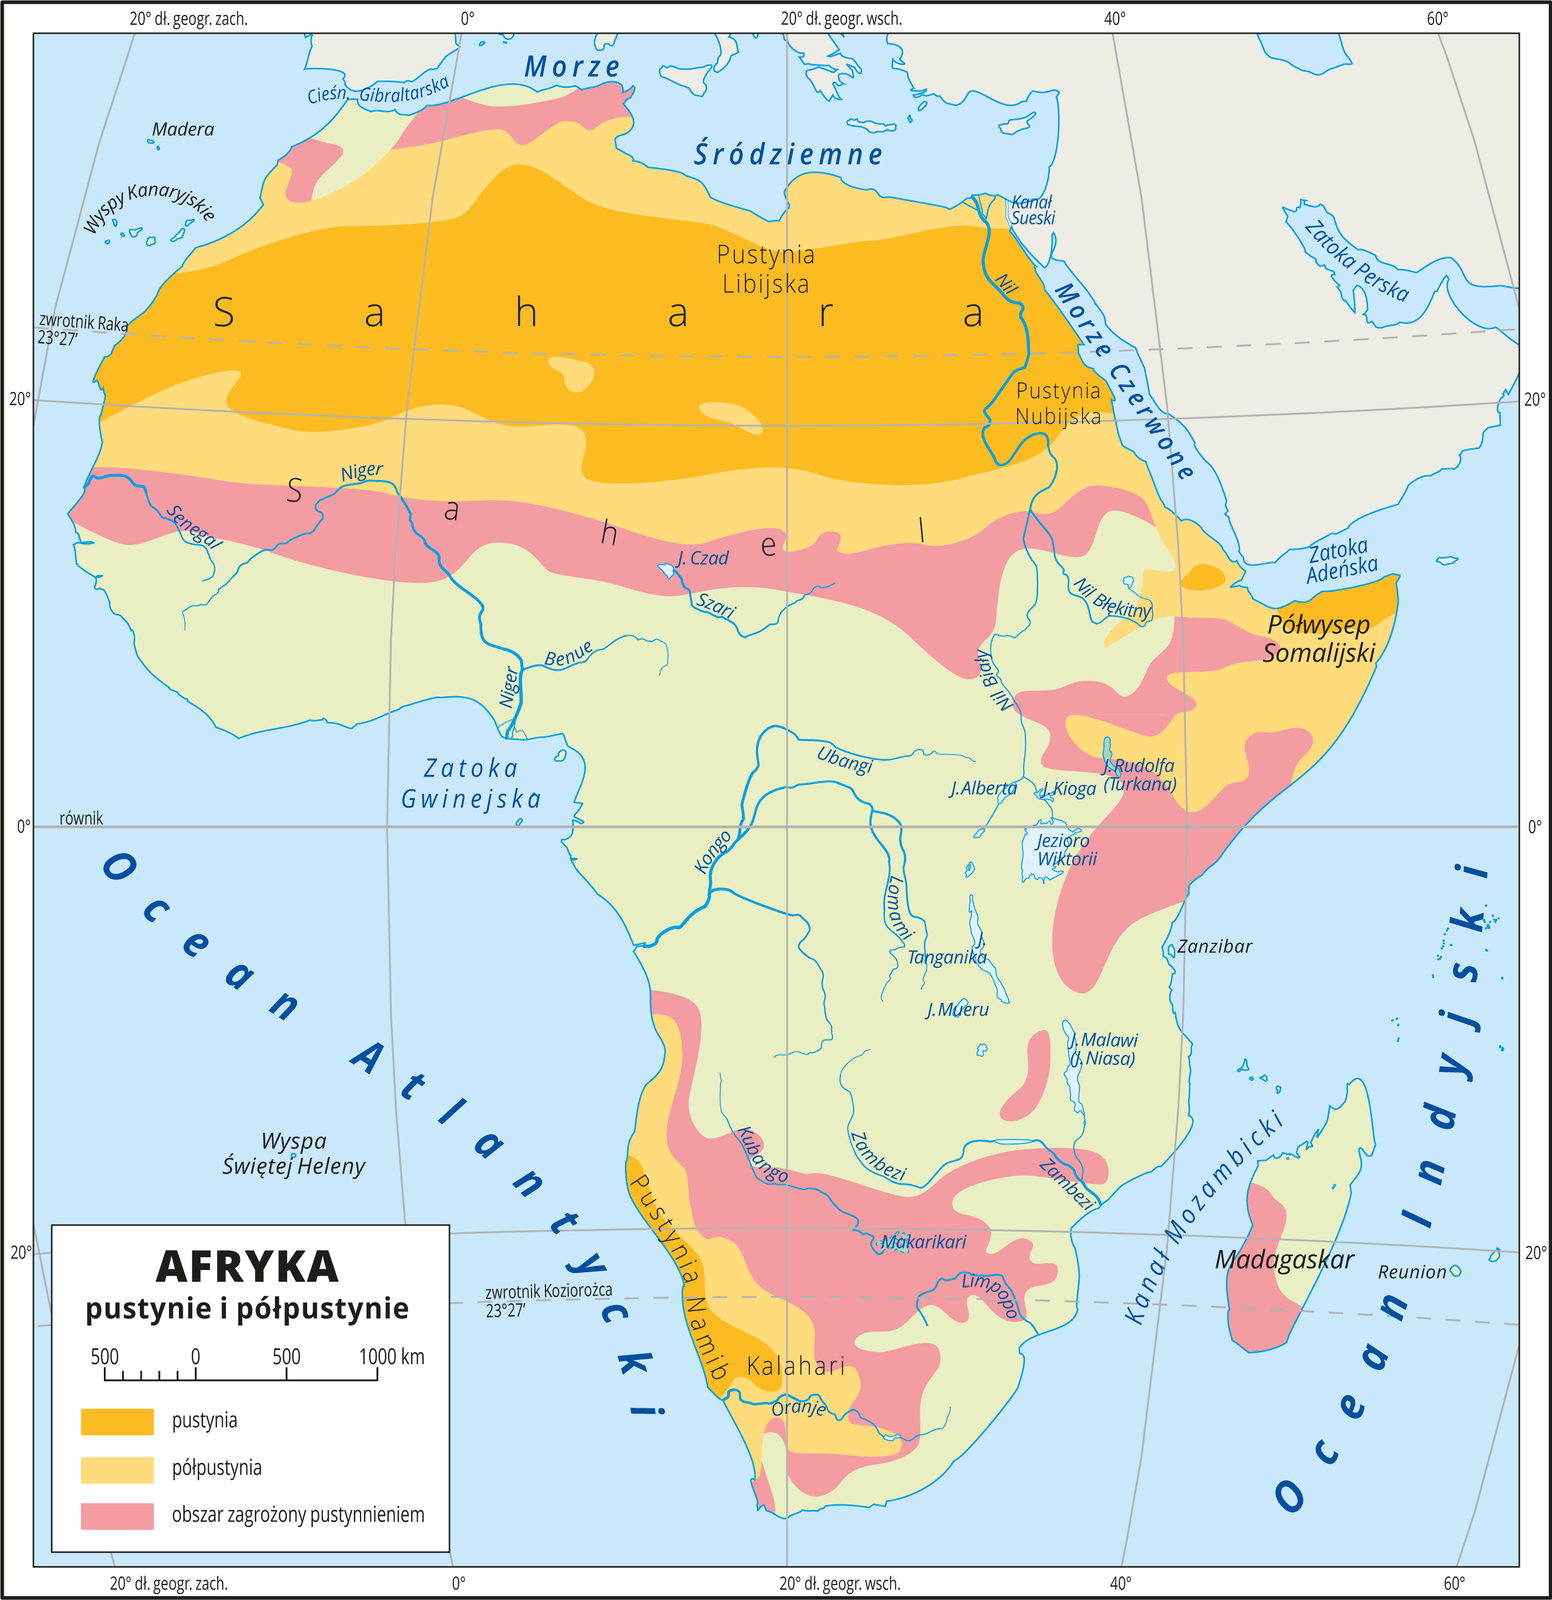 Ilustracja przedstawia mapę pustyń i półpustyń Afryki. W lewym dolnym rogu mapy znajduje się legenda. Umieszczono i opisano w niej kolory użyte na mapie. Kolorami przedstawiono obszary pustynne w północnej części Afryki (ciemnożółty), półpustynne – przylegające bezpośrednio do pustyń (jasnożółty) oraz  obszary zagrożone pustynnieniem (rejon Sahelu, okolice Jeziora Wiktorii oraz południe kontynentu - kolor różowy). Pustynia Sahara znajduje się na północy Afryki. Poniżej niej znajduje się Sahel. W centralno‑wschodniej części Afryki znajduje się Półwysep Somalijski. Na południowo‑zachodnim wybrzeżu kontynentu znajduje się Pustynia Namib. Mapa pokryta jest równoleżnikami i południkami, które opisano w białej ramce co dwadzieścia stopni. 